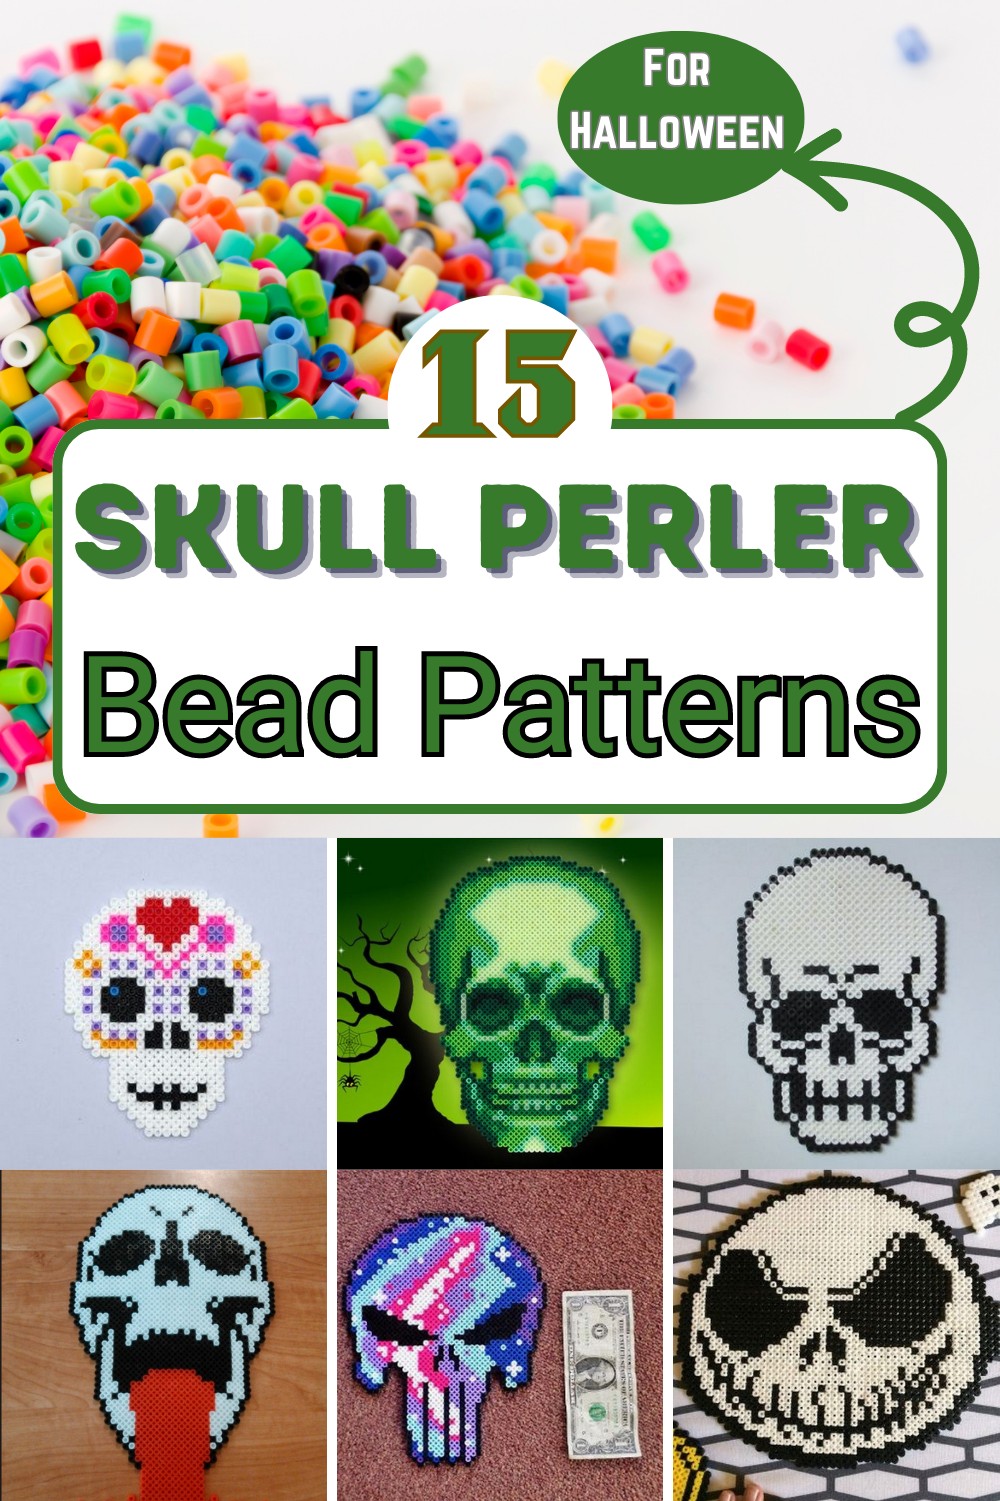 15 Skull Perler Bead Patterns For Halloween